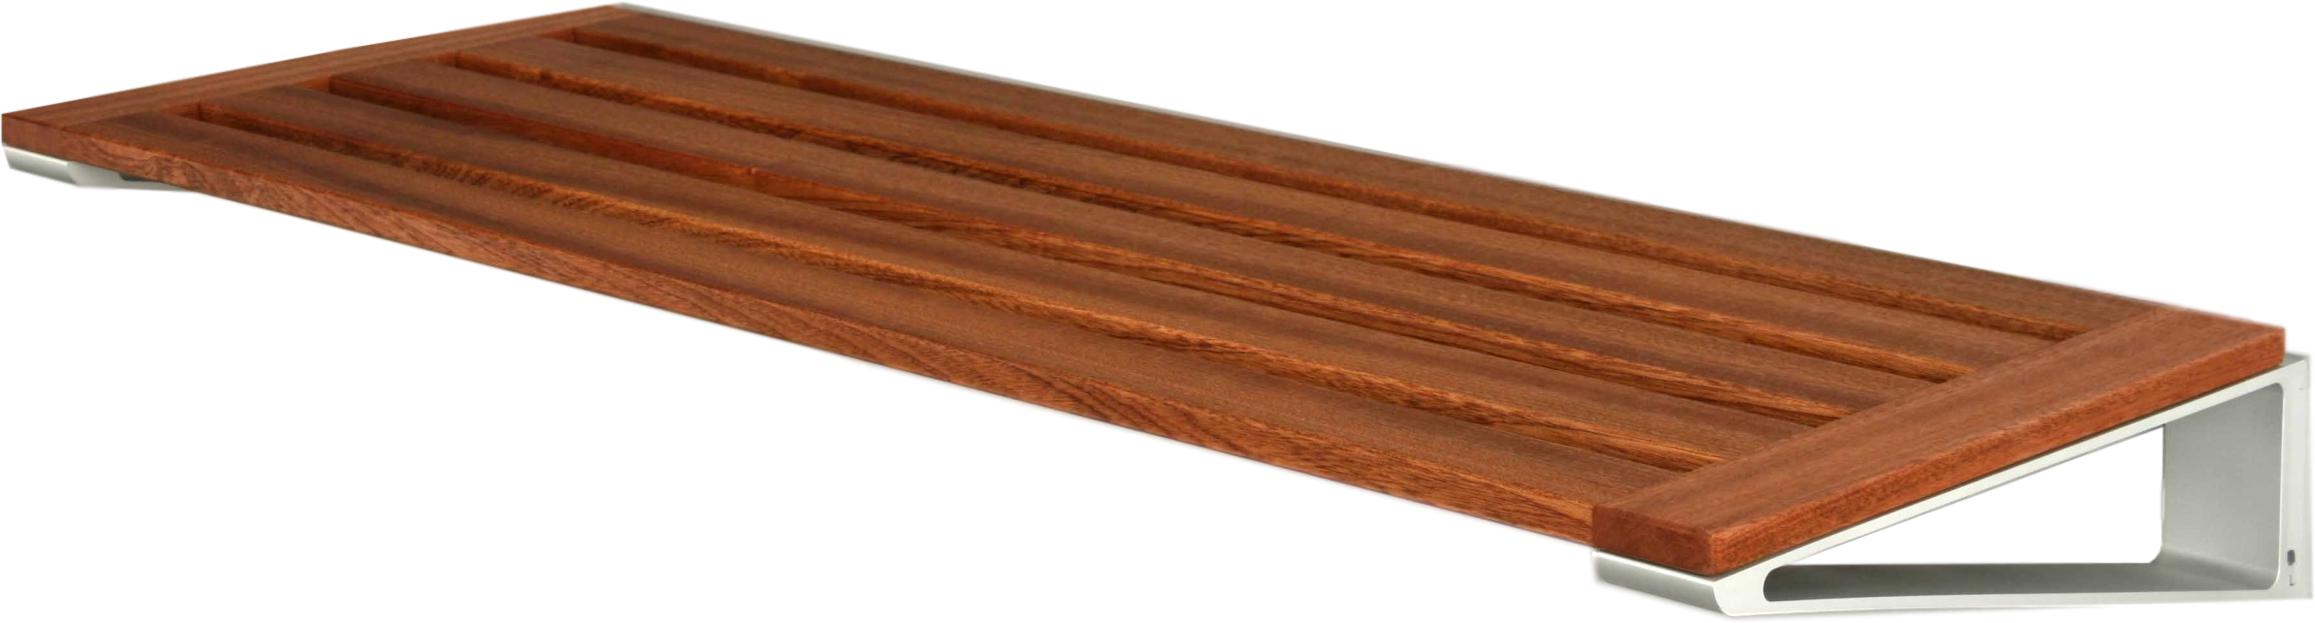 Loca Knaxsko rack 40 cm, mahogny/aluminium